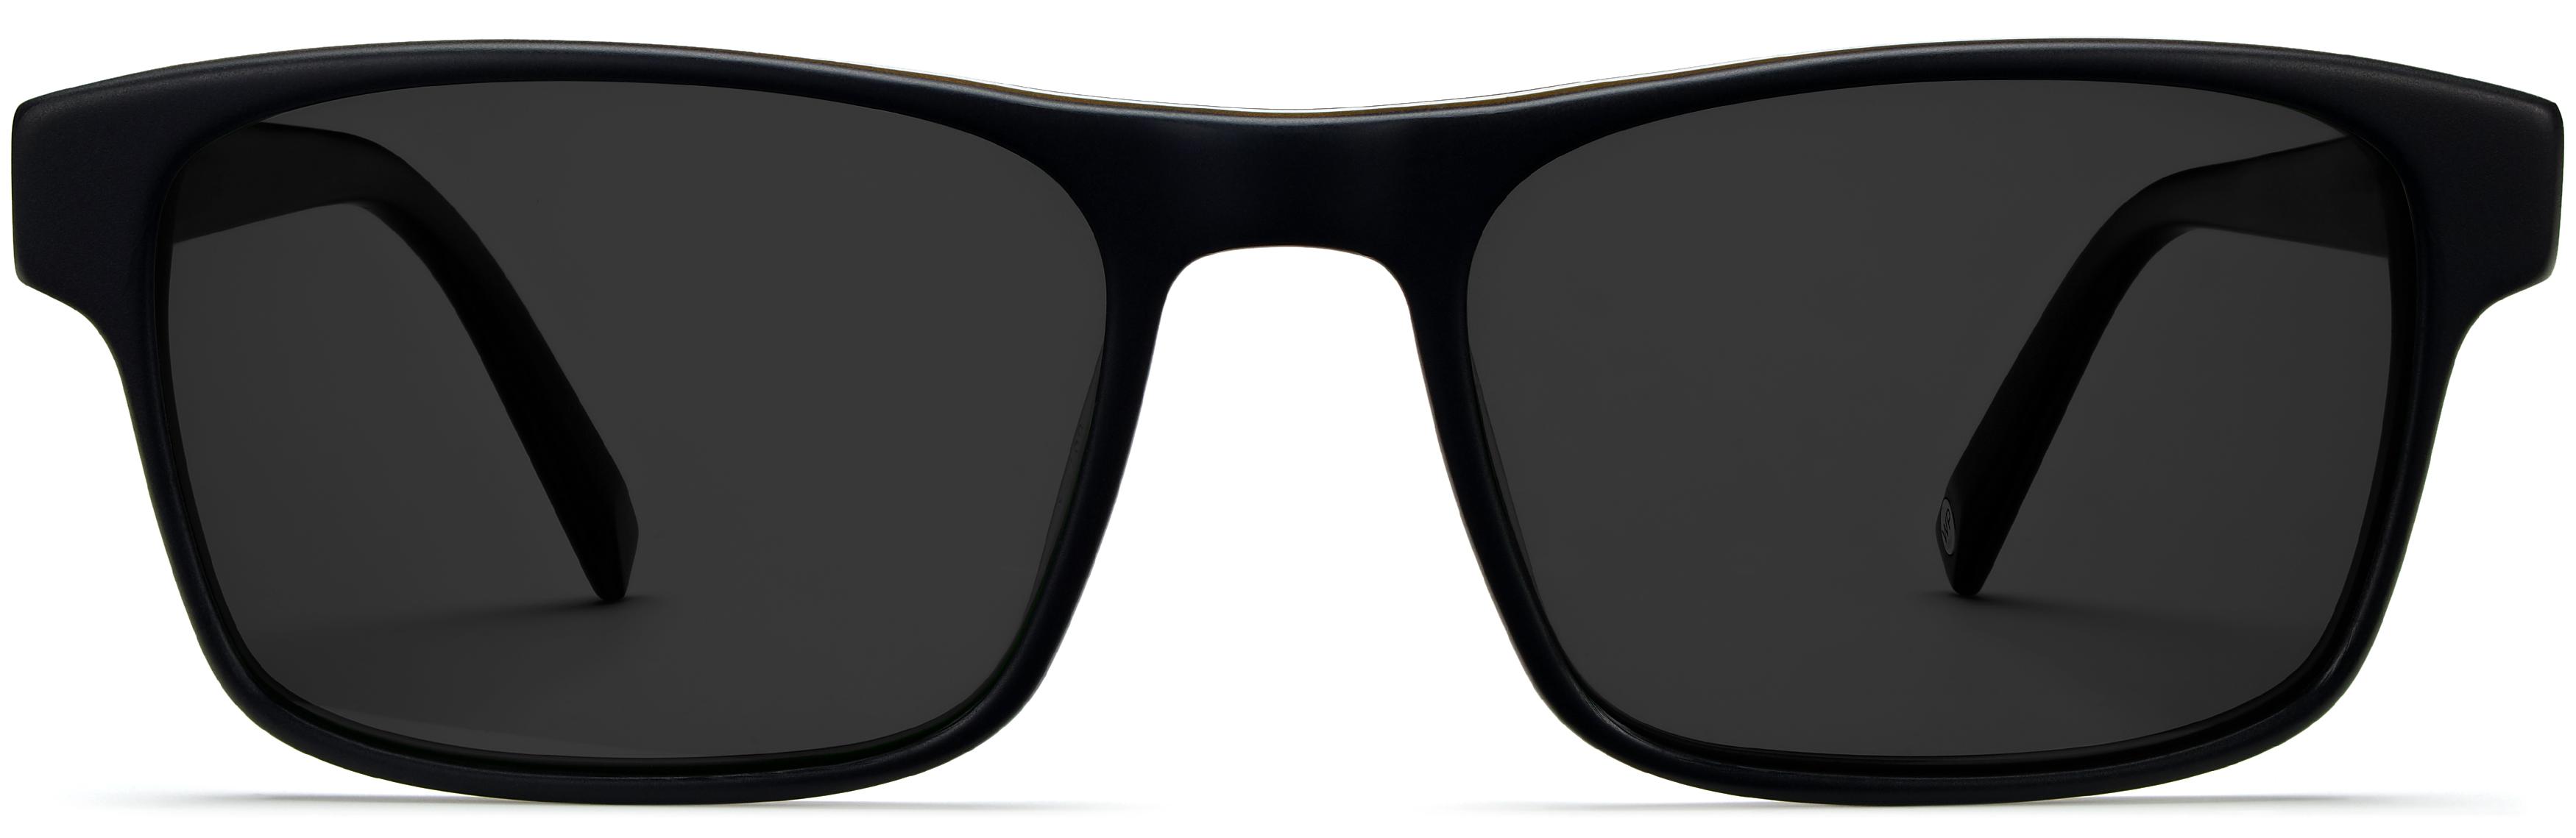 Perkins Sunglasses in Black Matte Eclipse